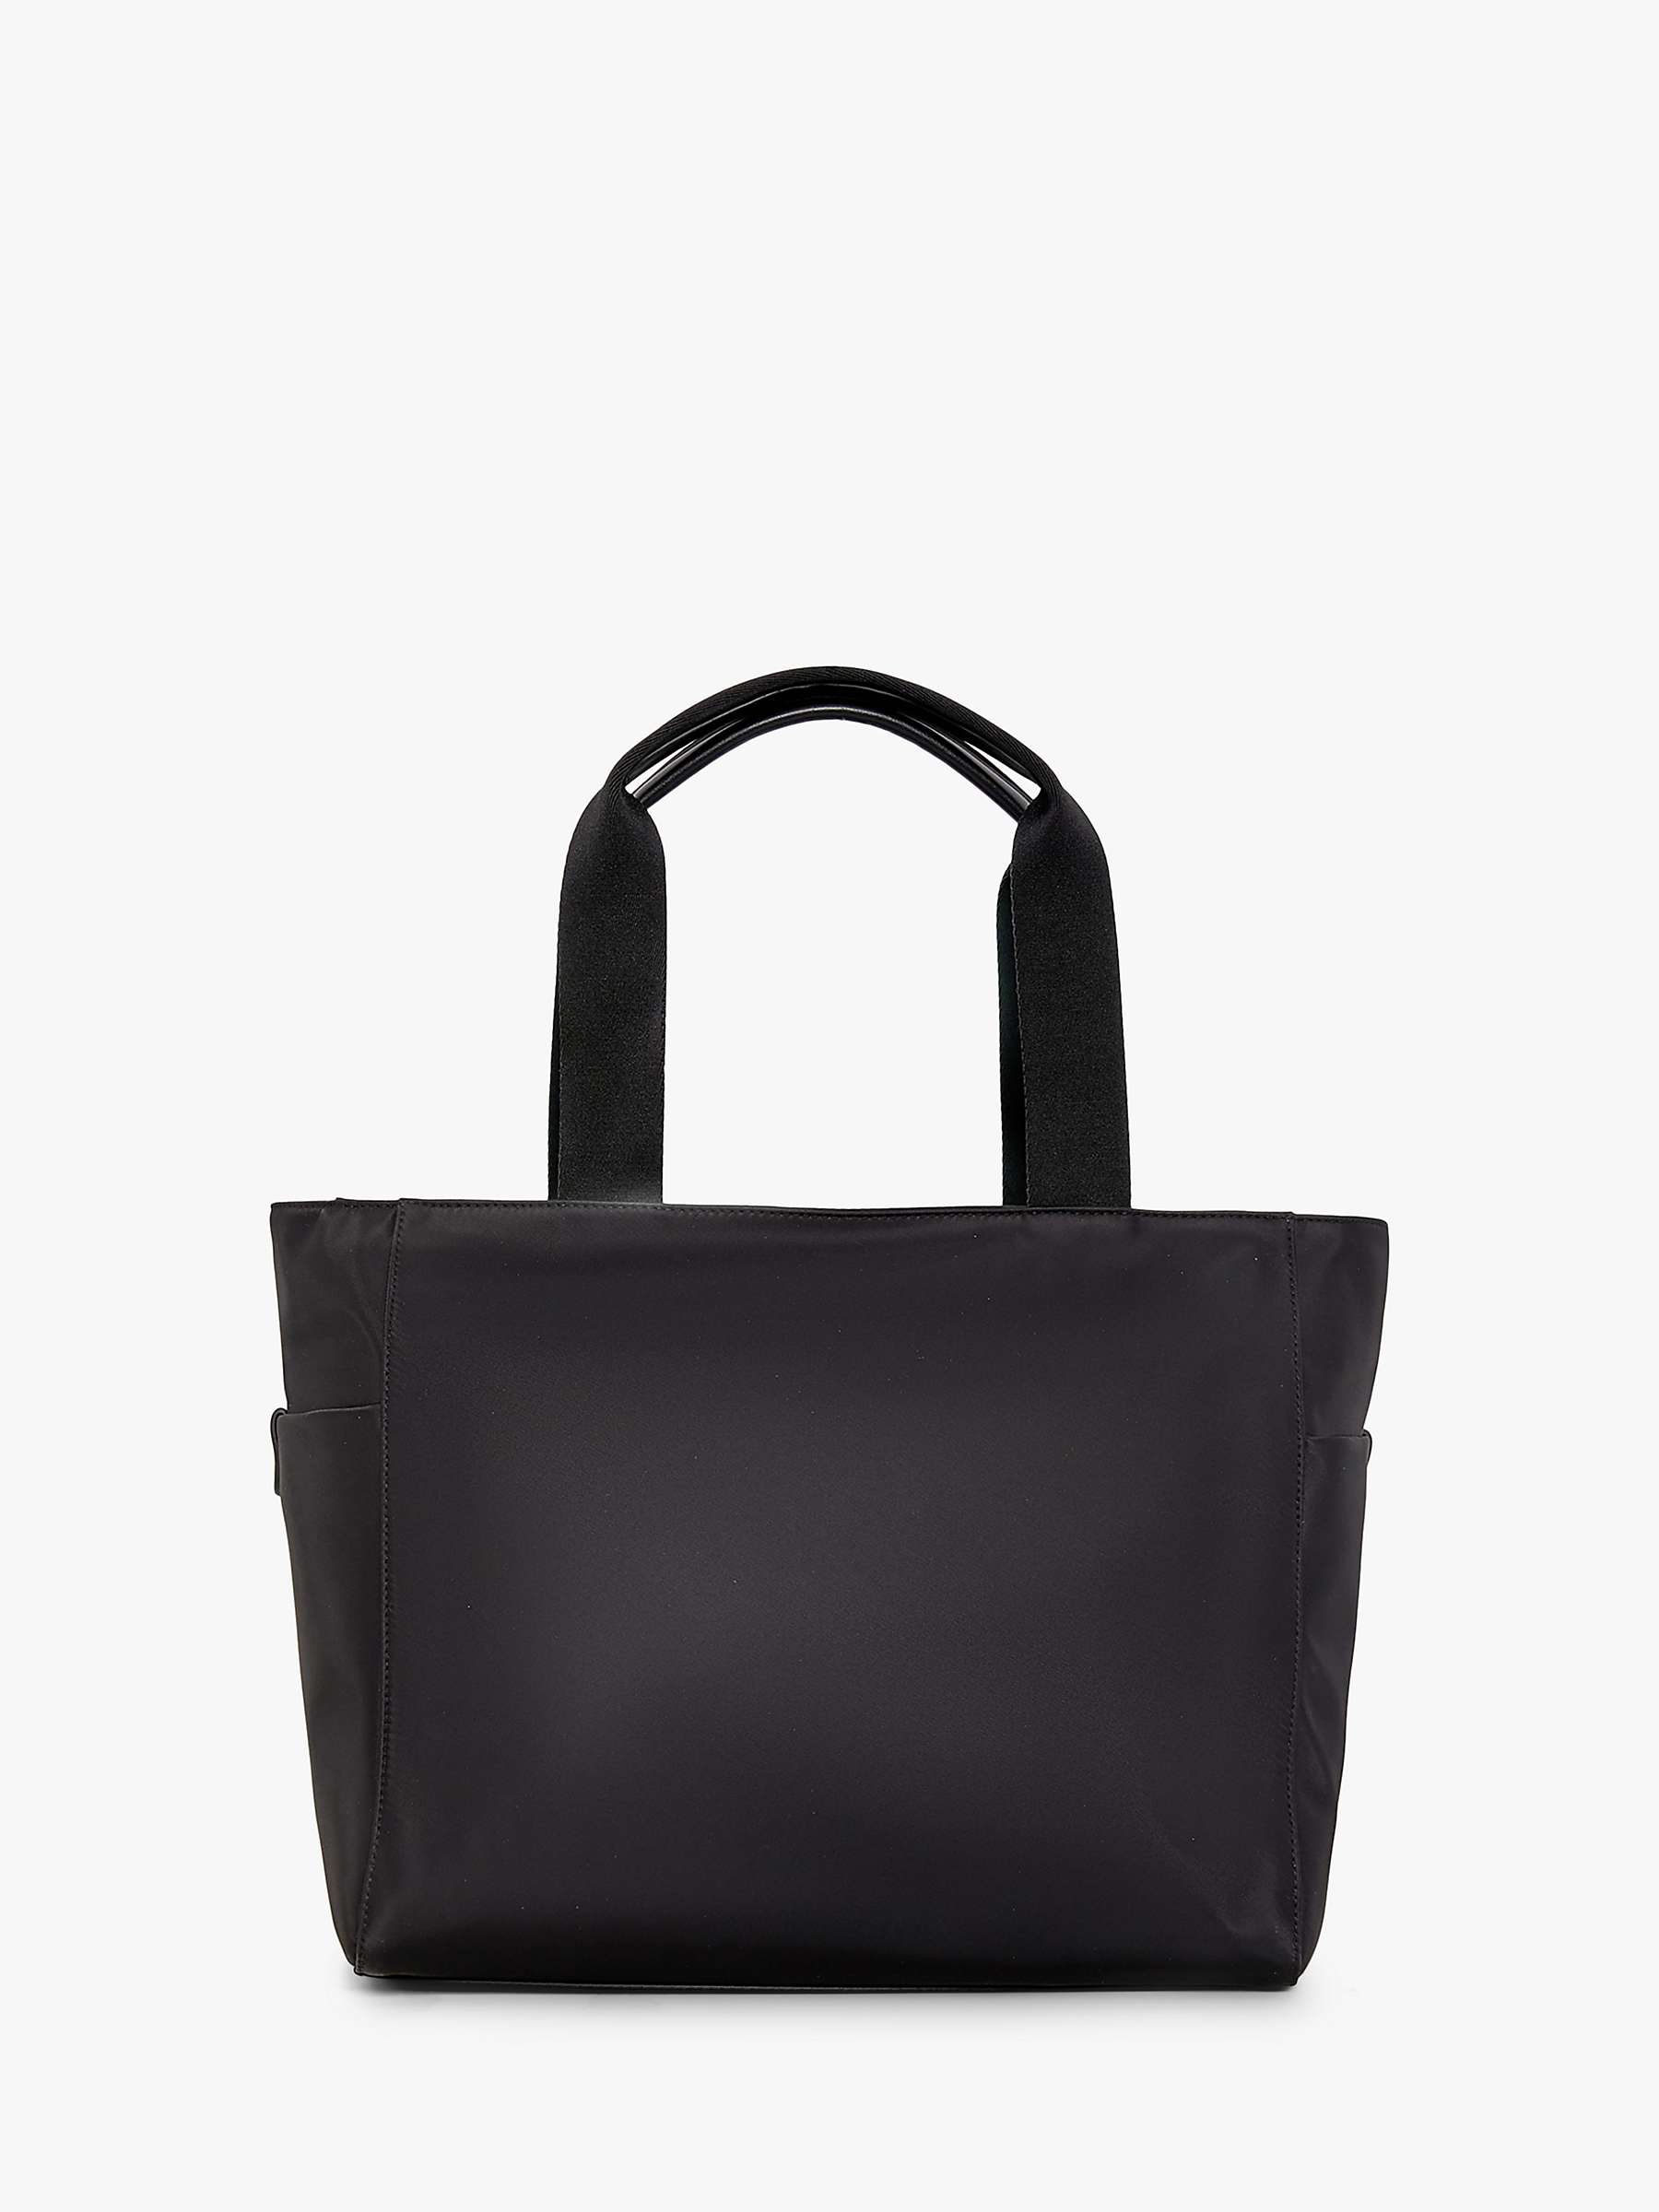 Buy Jasper Conran Carmen Tote Bag, Black Online at johnlewis.com